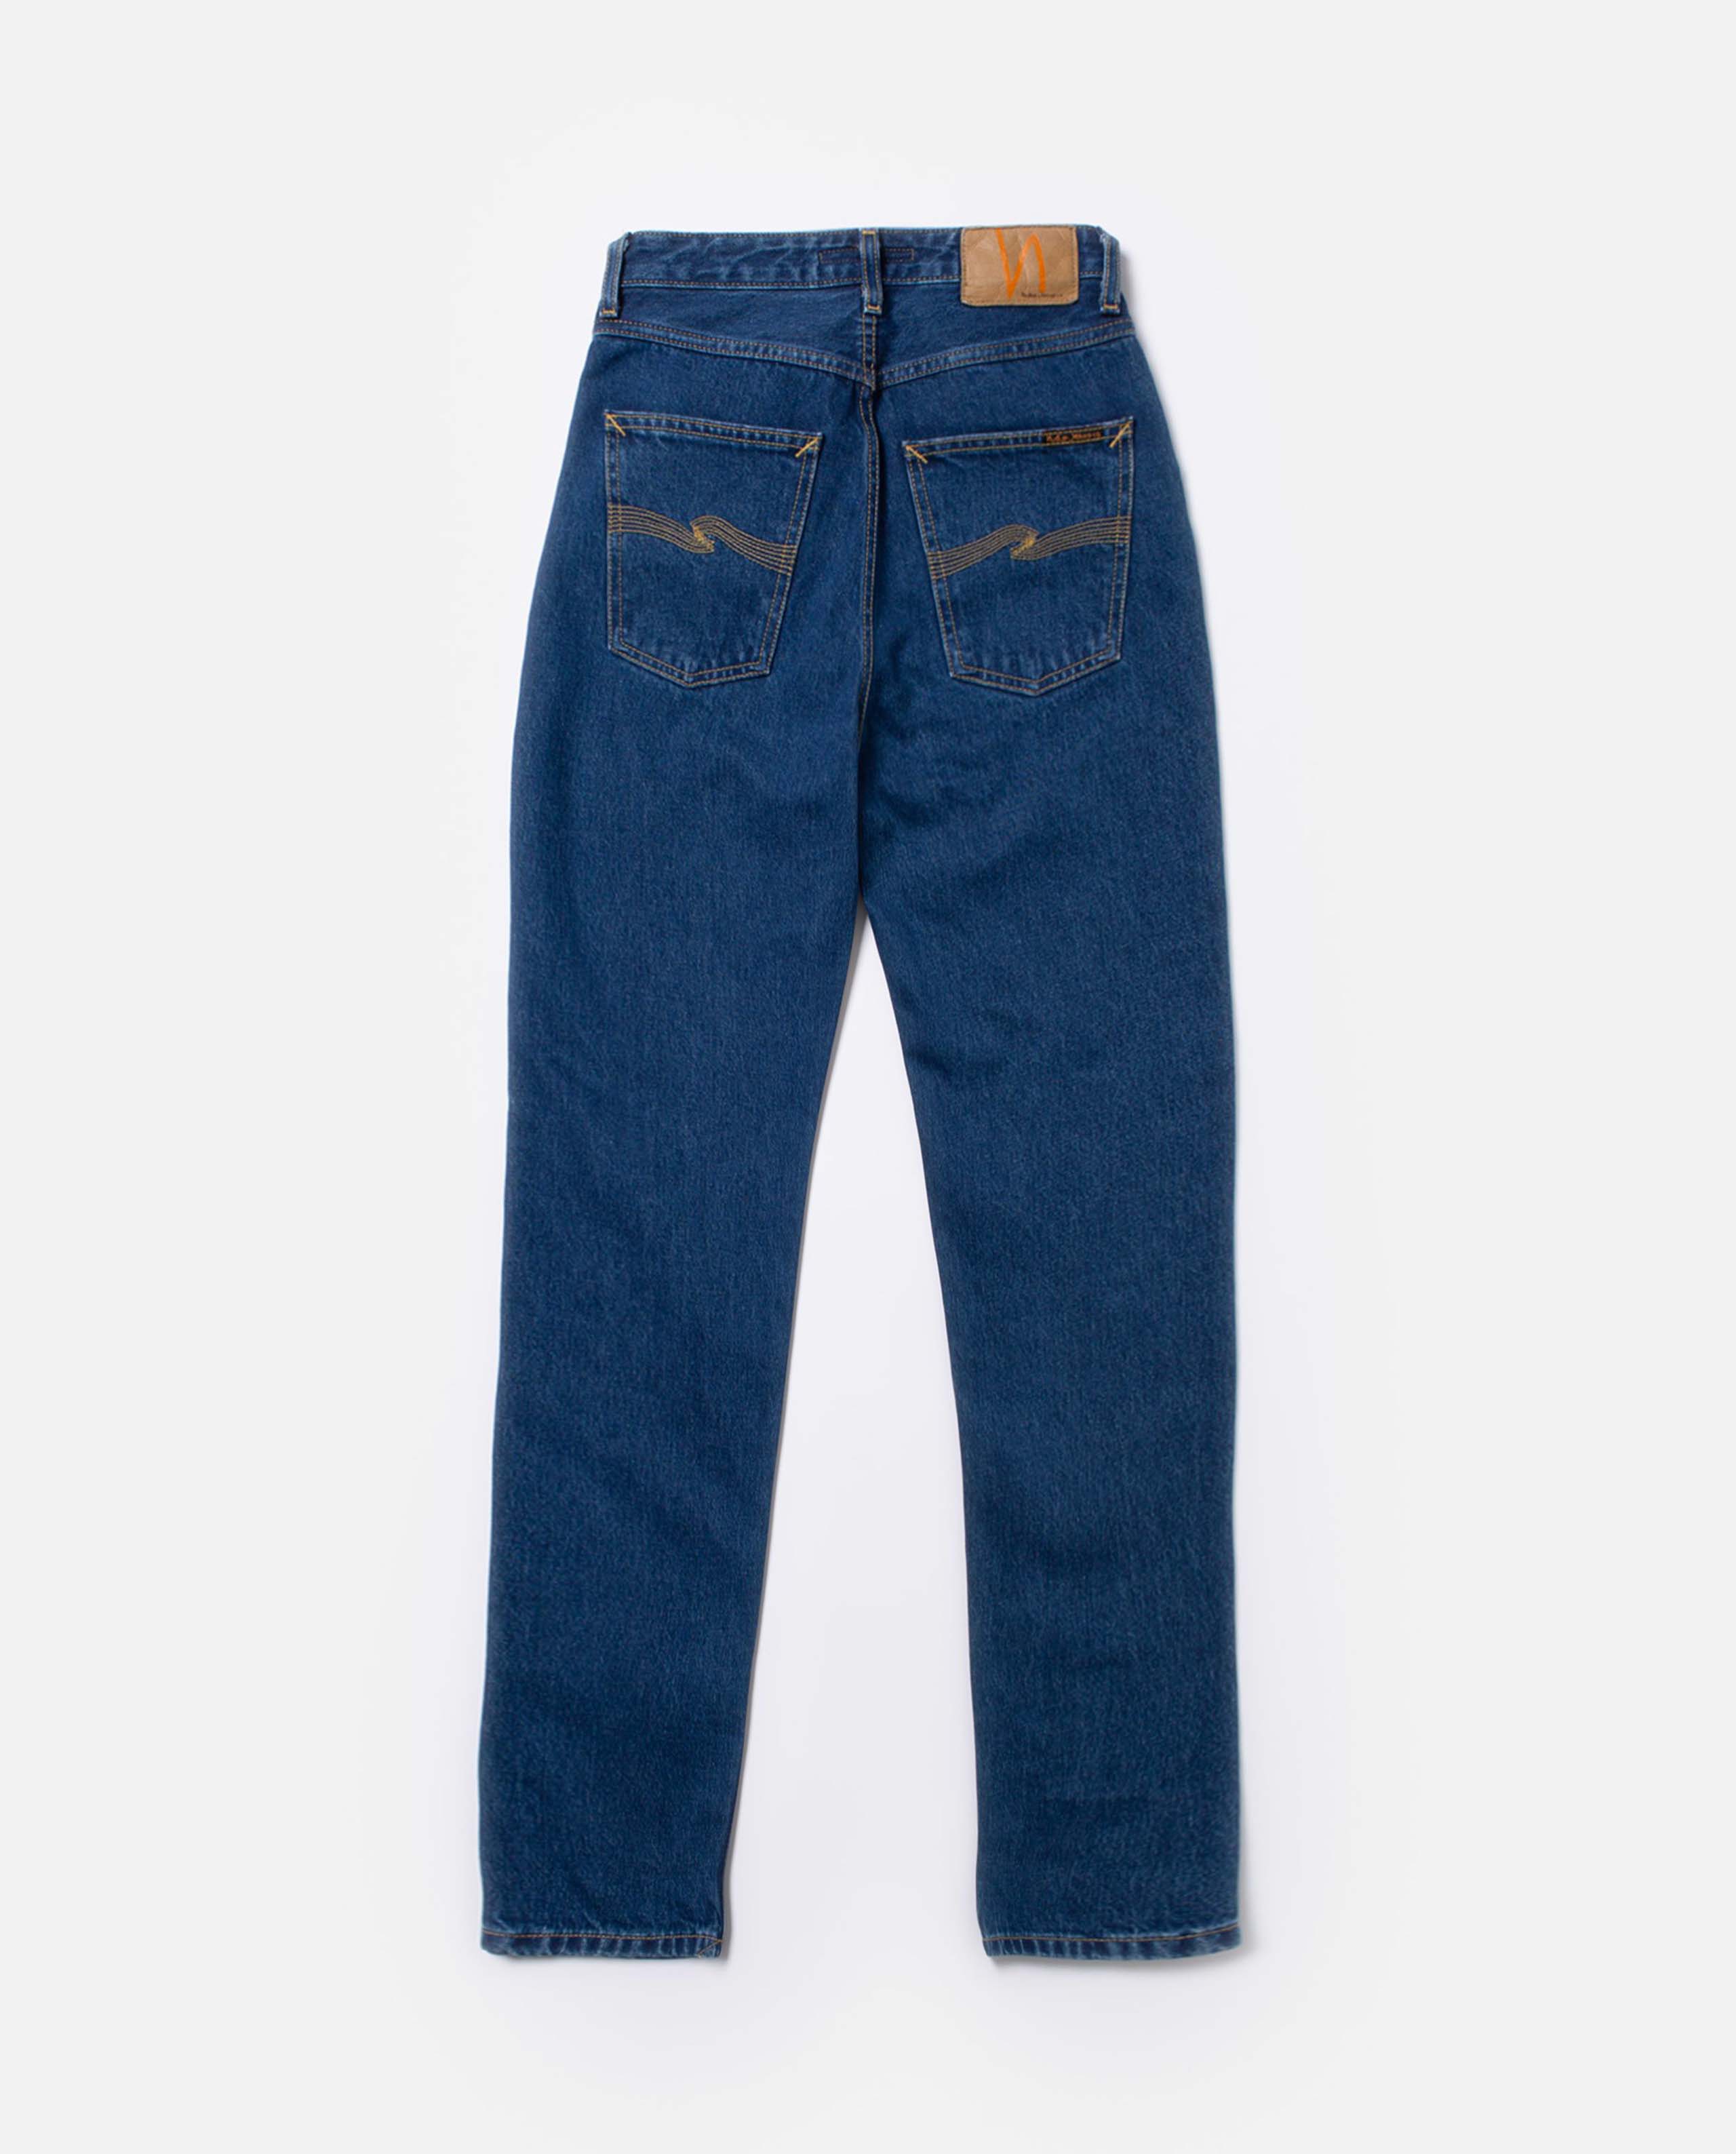 Marché commun jean droit en coton bio bleu nudie jeans